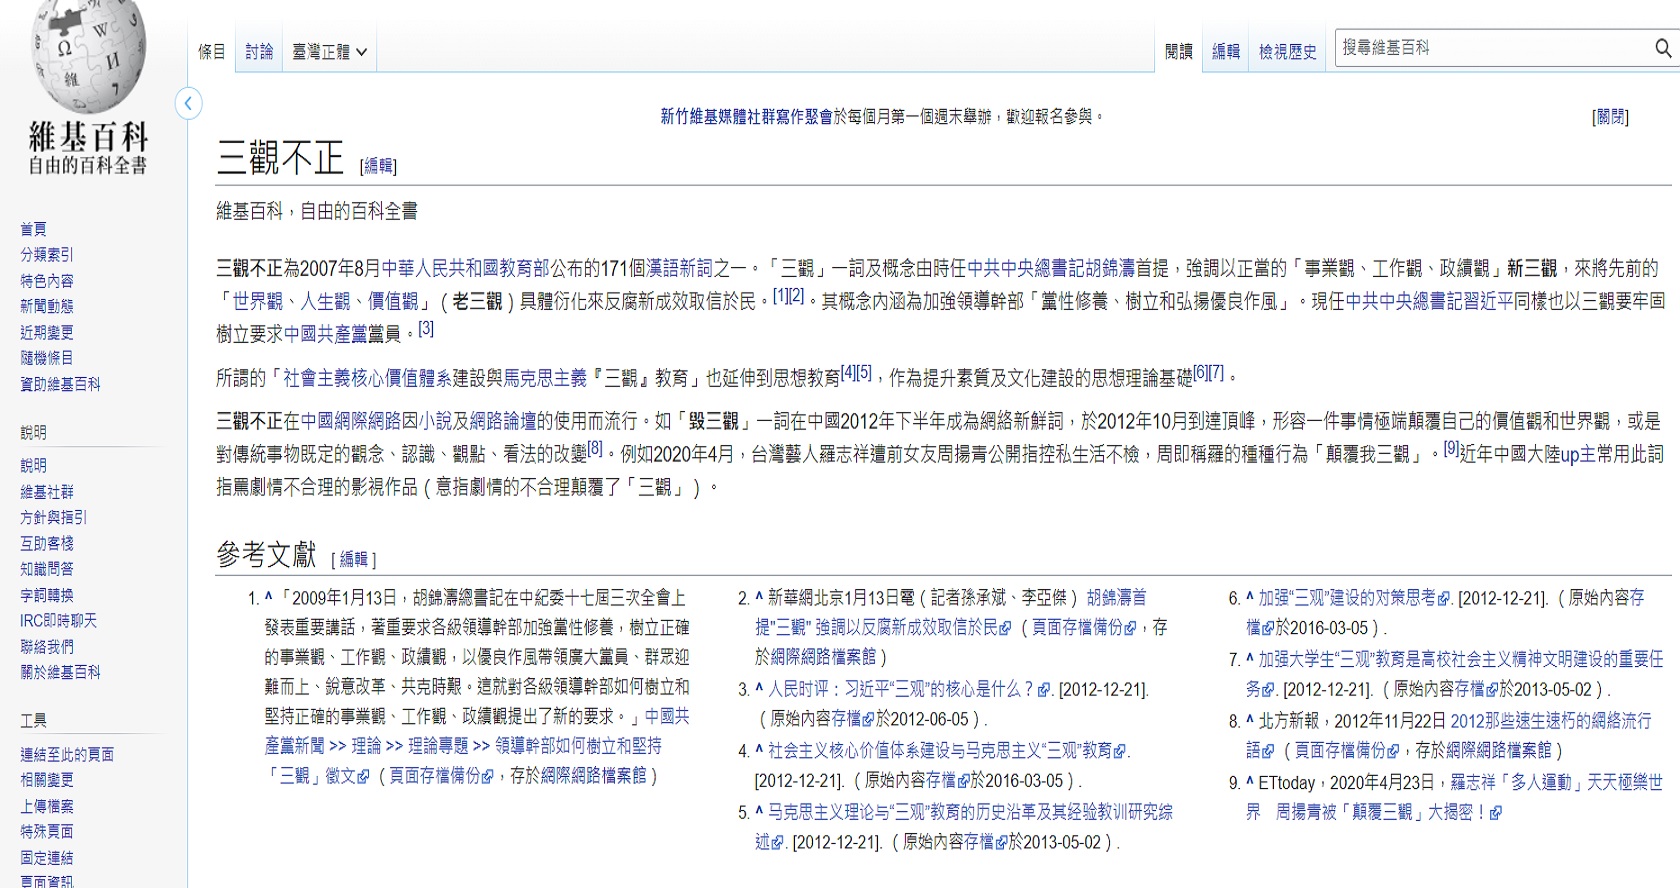 「三觀」是中國共產黨造詞